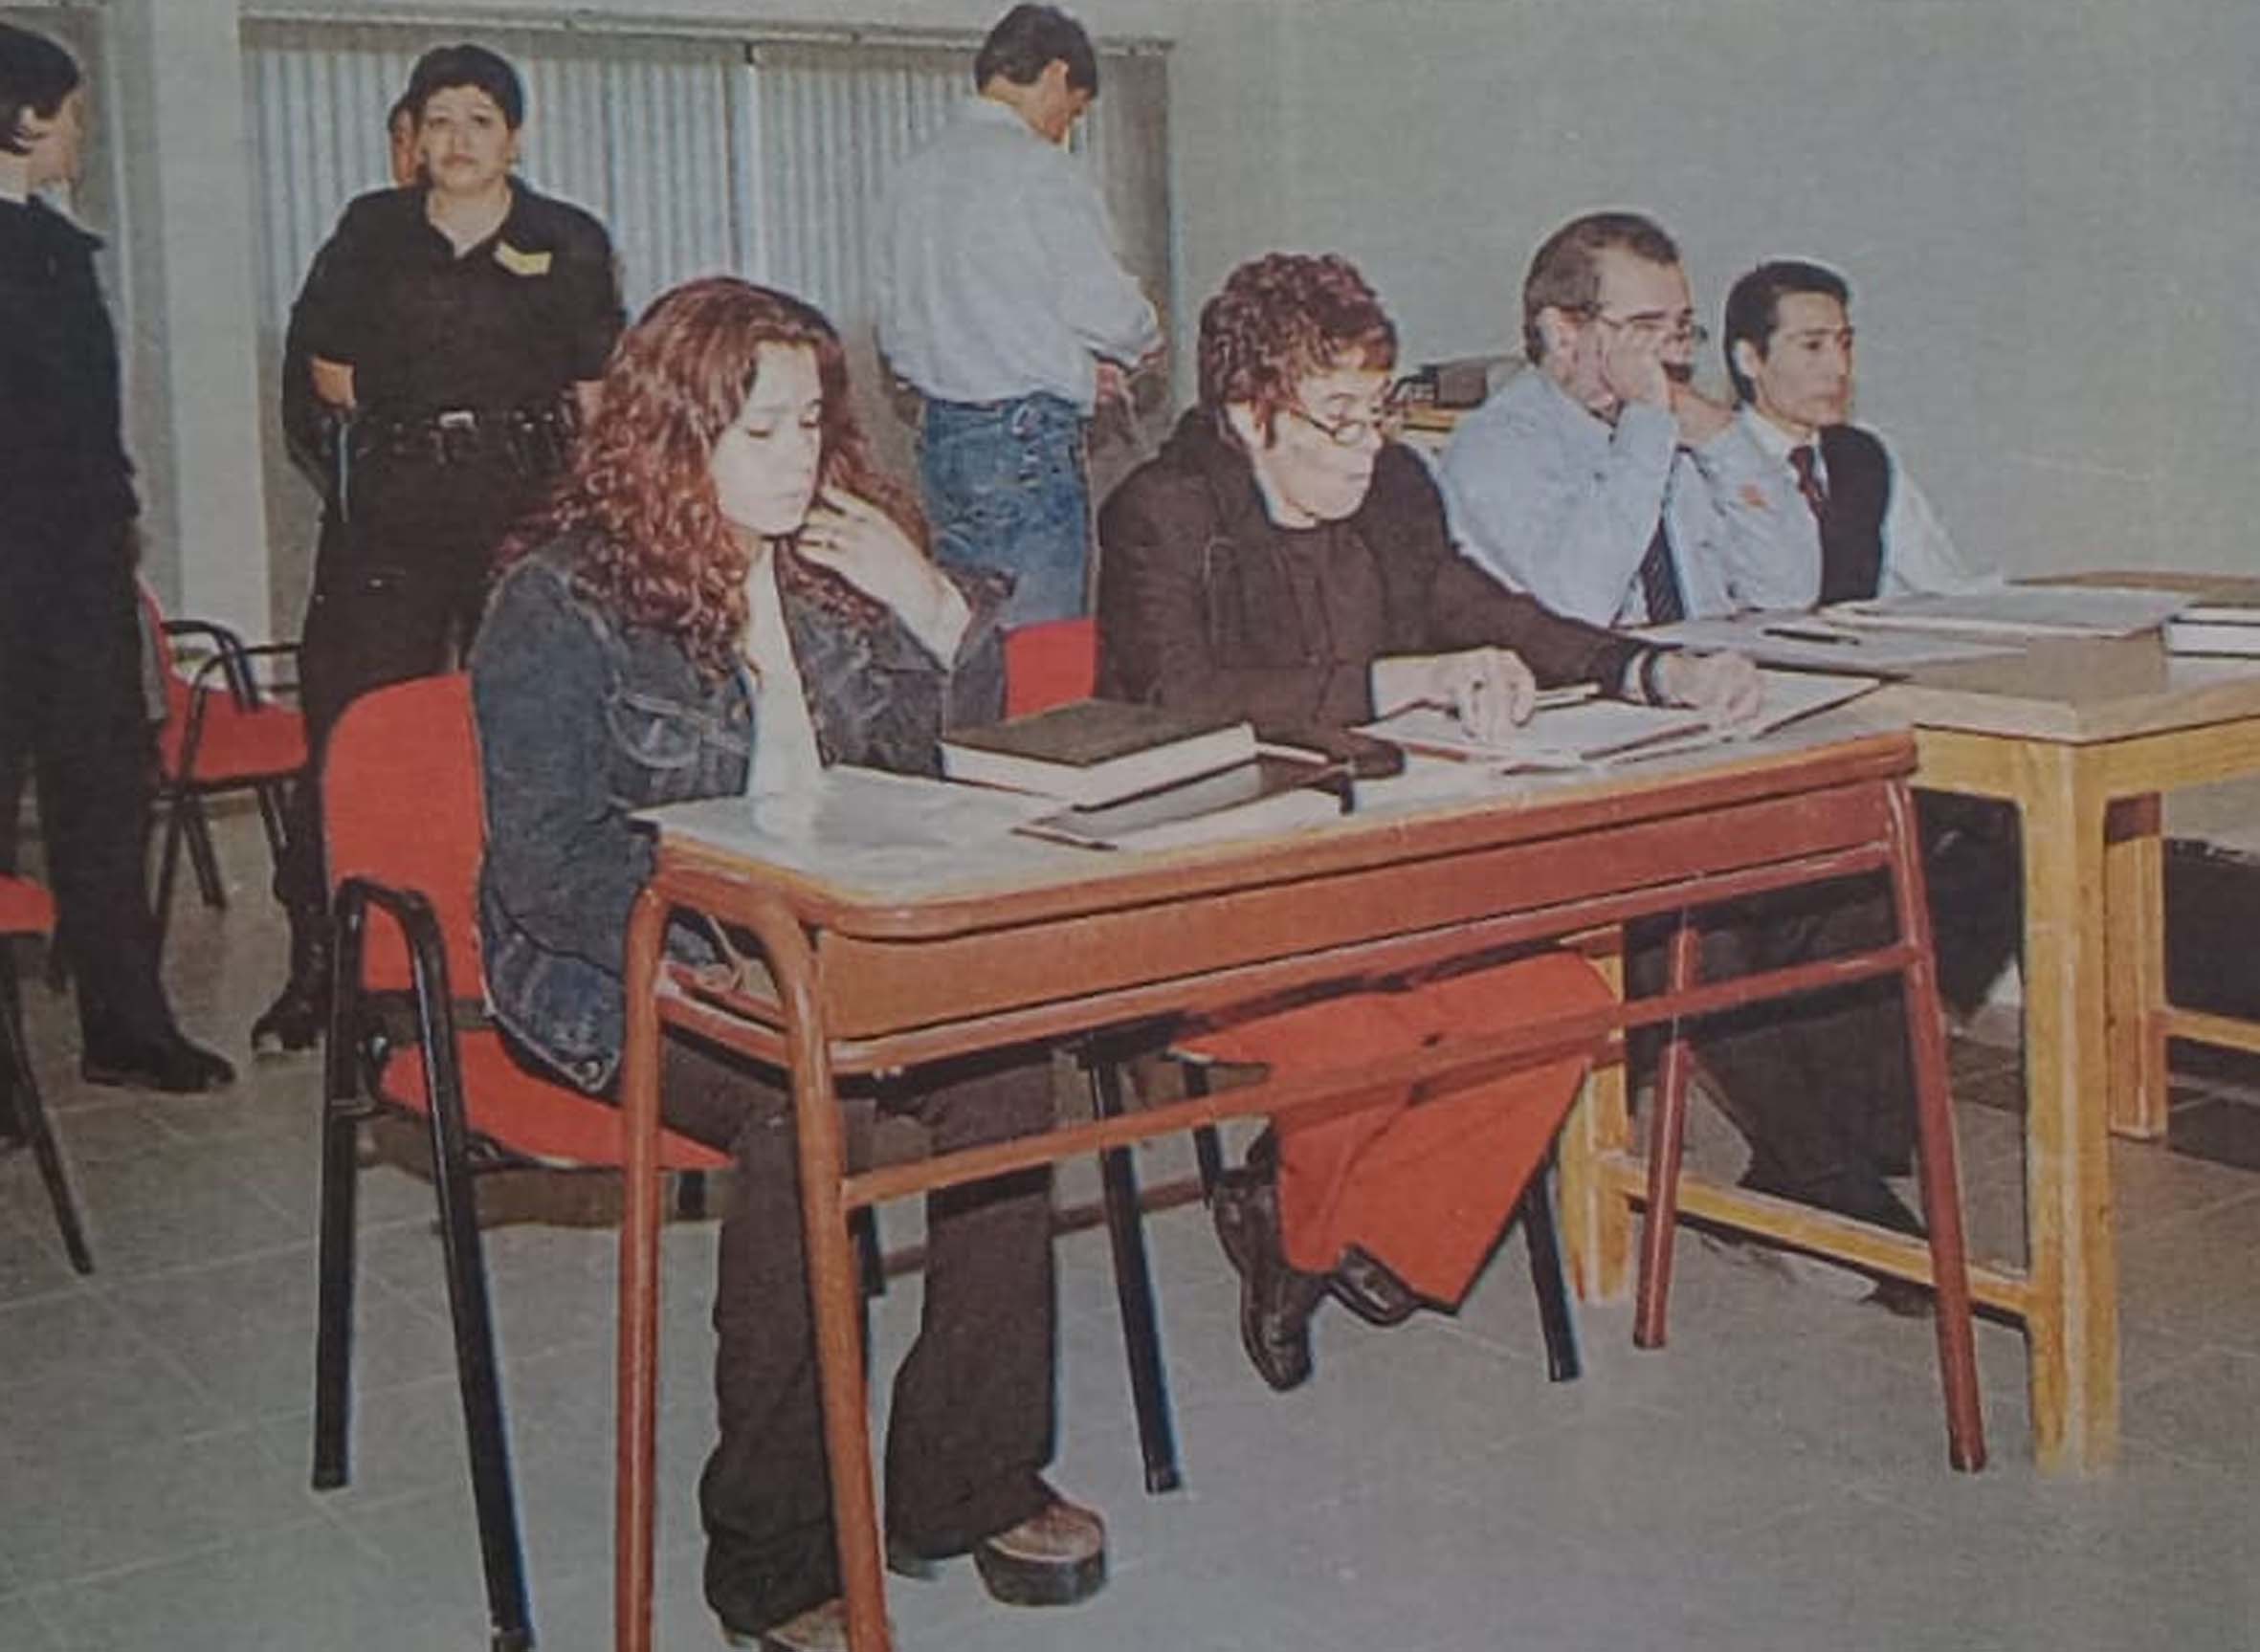 El juicio se realizó en 2004. Patricia Alonso y Carlos Soñé están en los extremos de la mesa, junto a sus abogados. (Archivo)